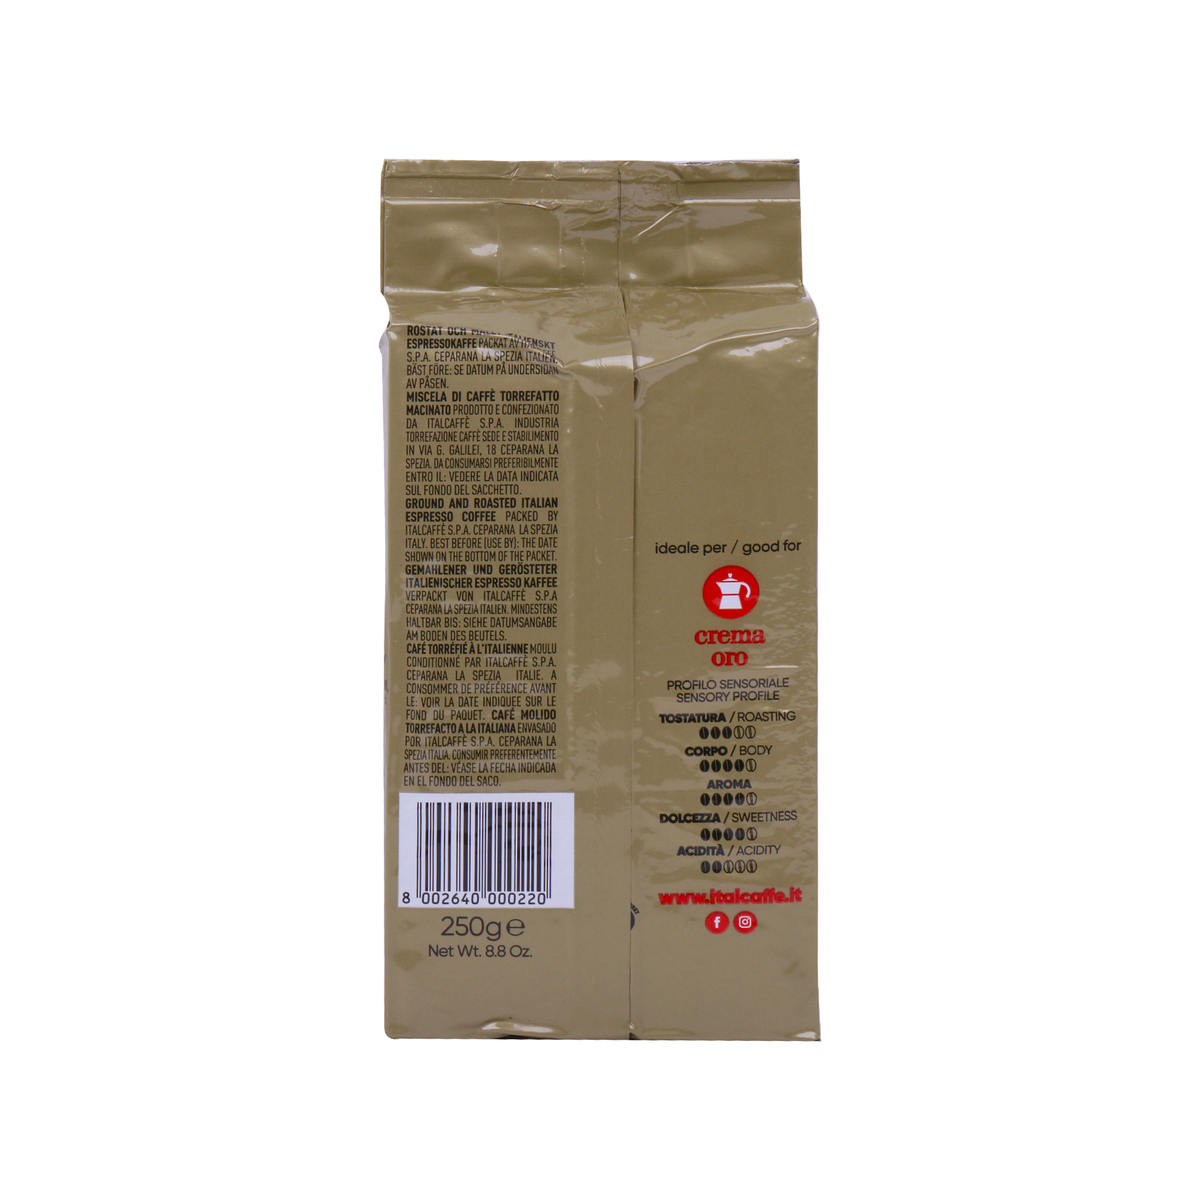 Italcaffe Crema Oro Ground Coffee 250g